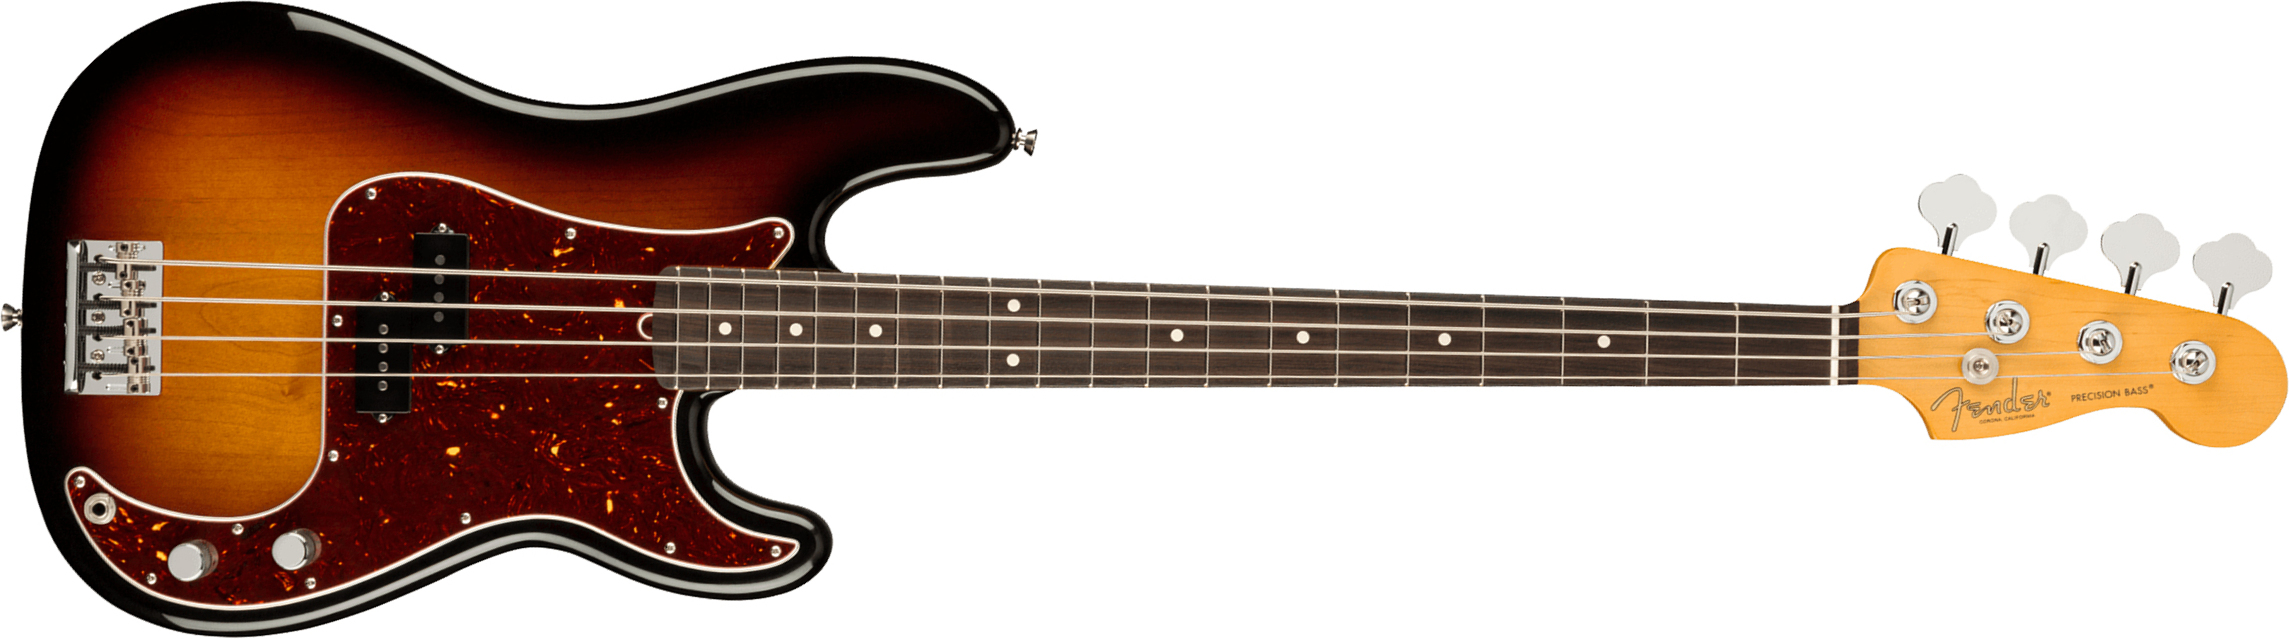 Fender Precision Bass American Professional Ii Usa Rw - 3-color Sunburst - Solidbody E-bass - Main picture